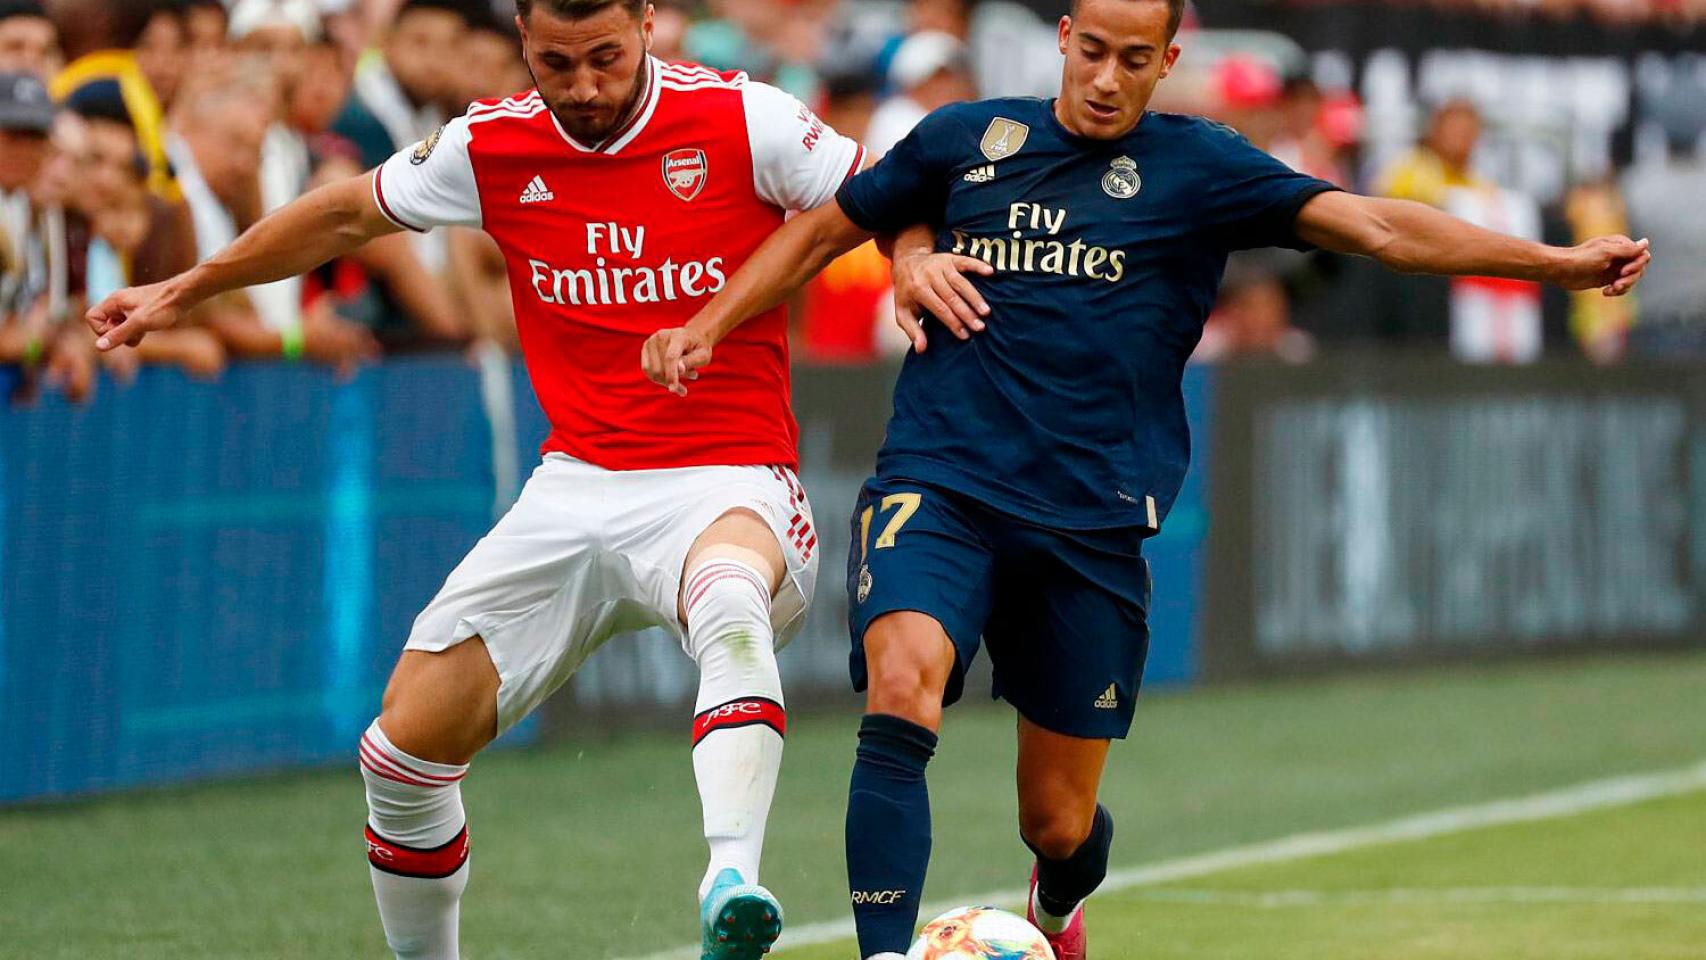 Lucas Vázquez pelea por el balón con un jugador del Arsenal